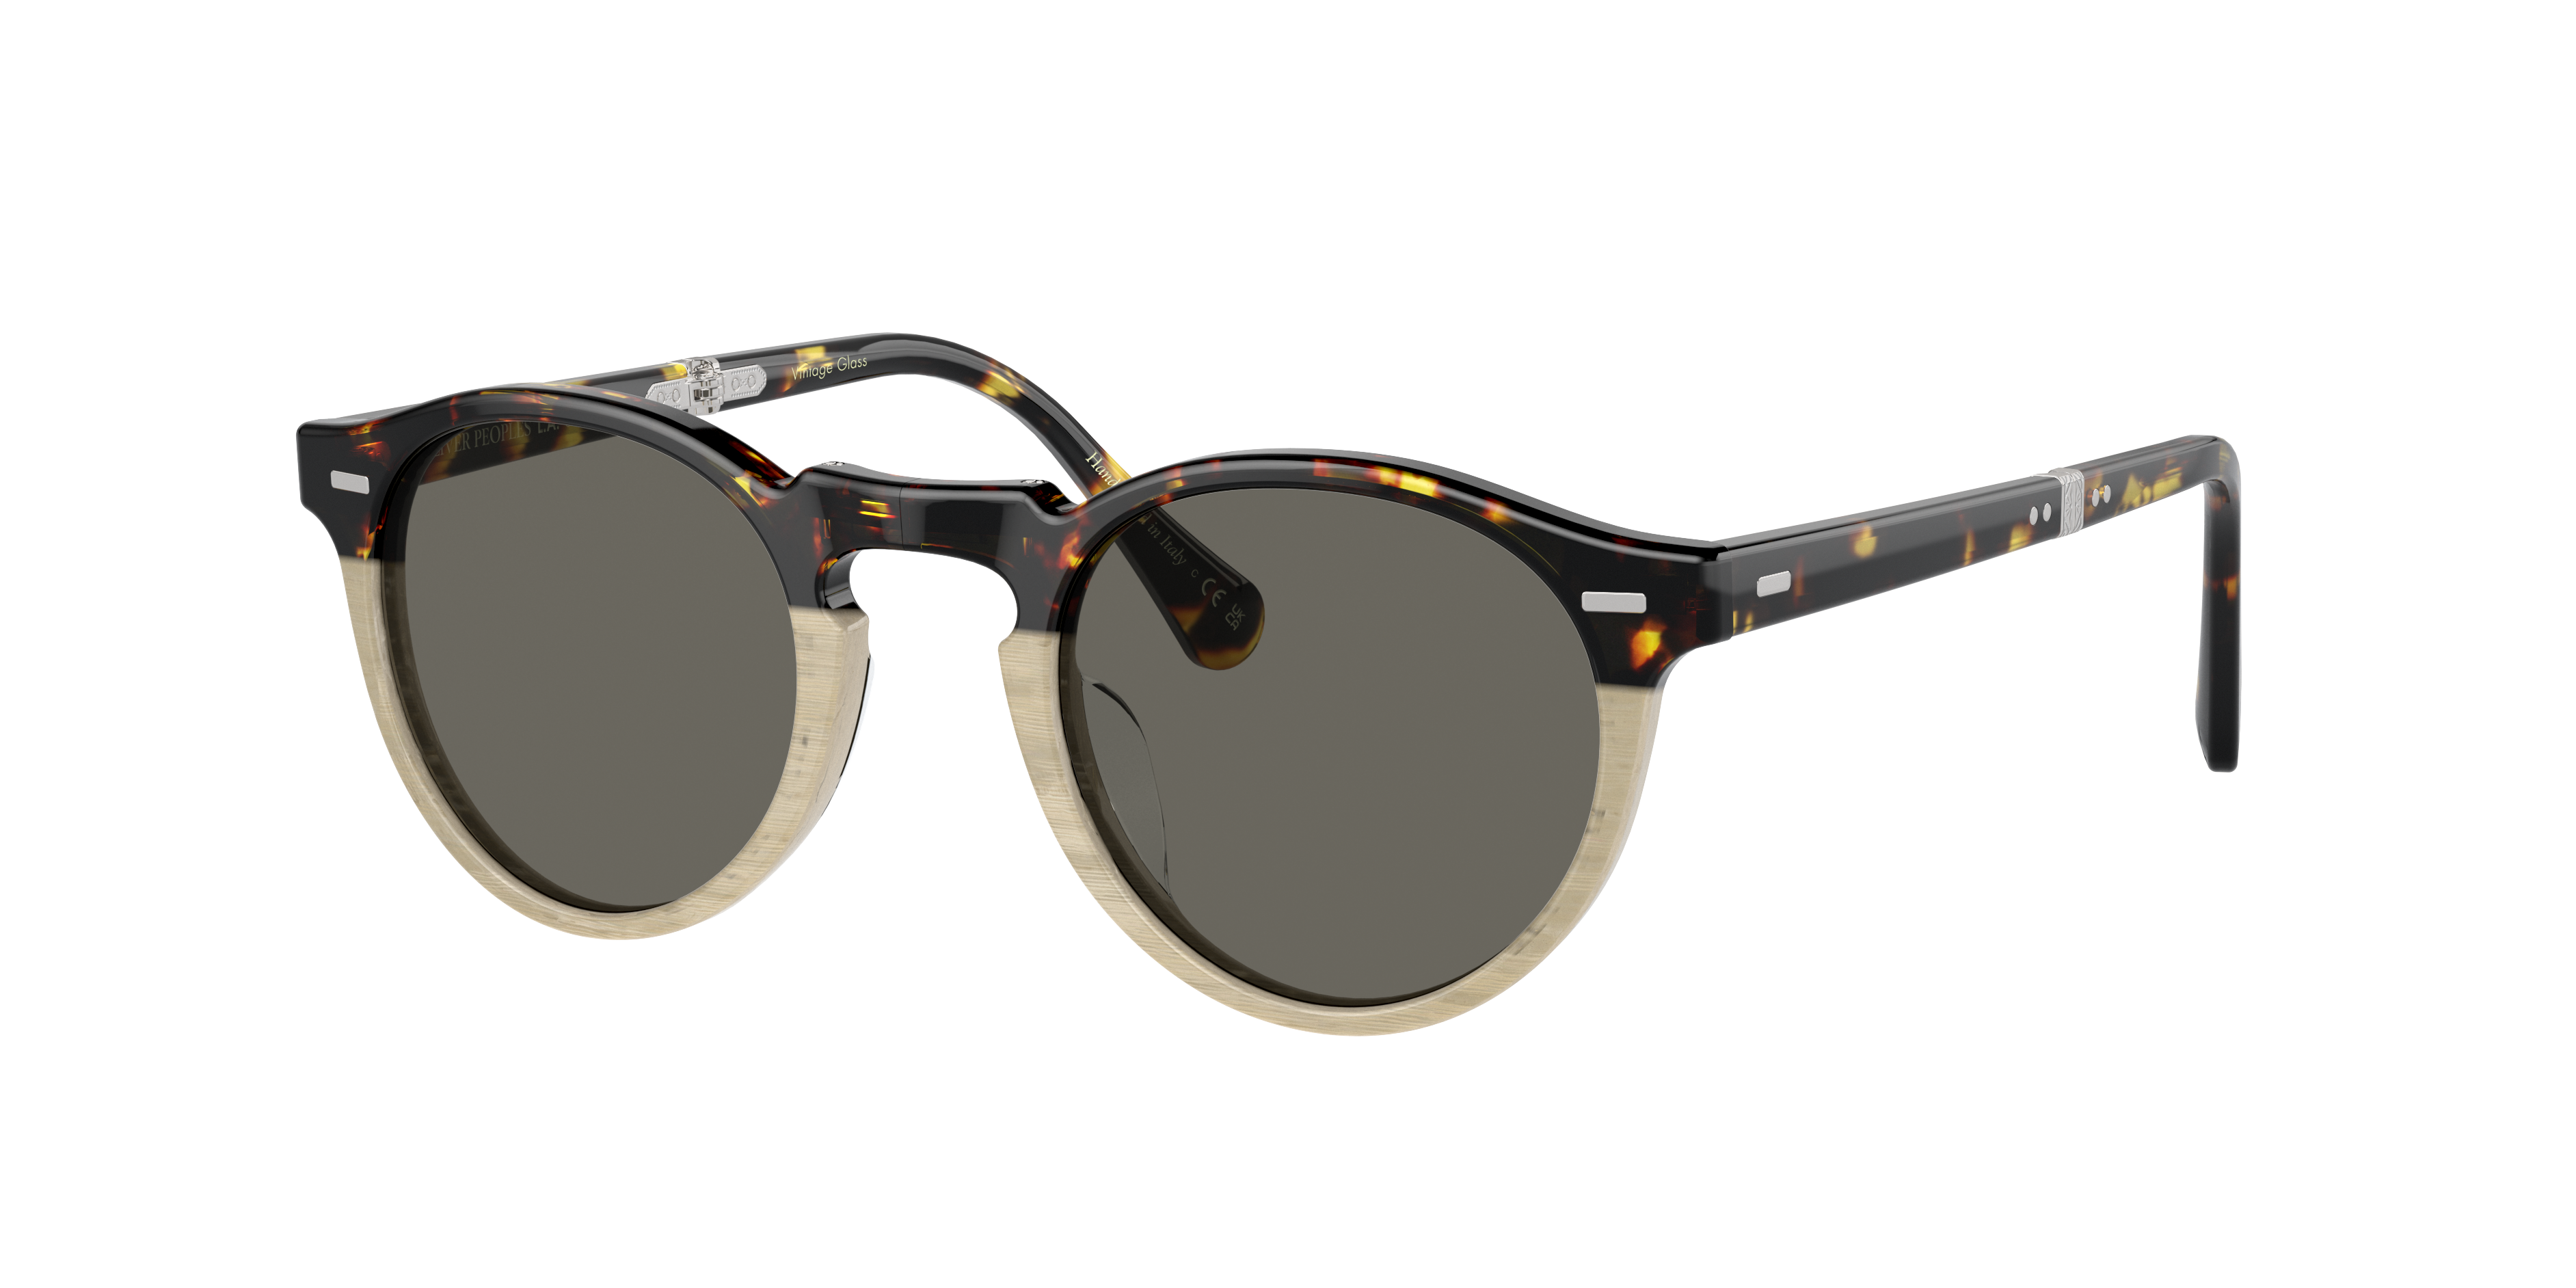 Oliver Gregory Peck 1962 Sunglasses in DTB/Beige Gradient | Oliver®